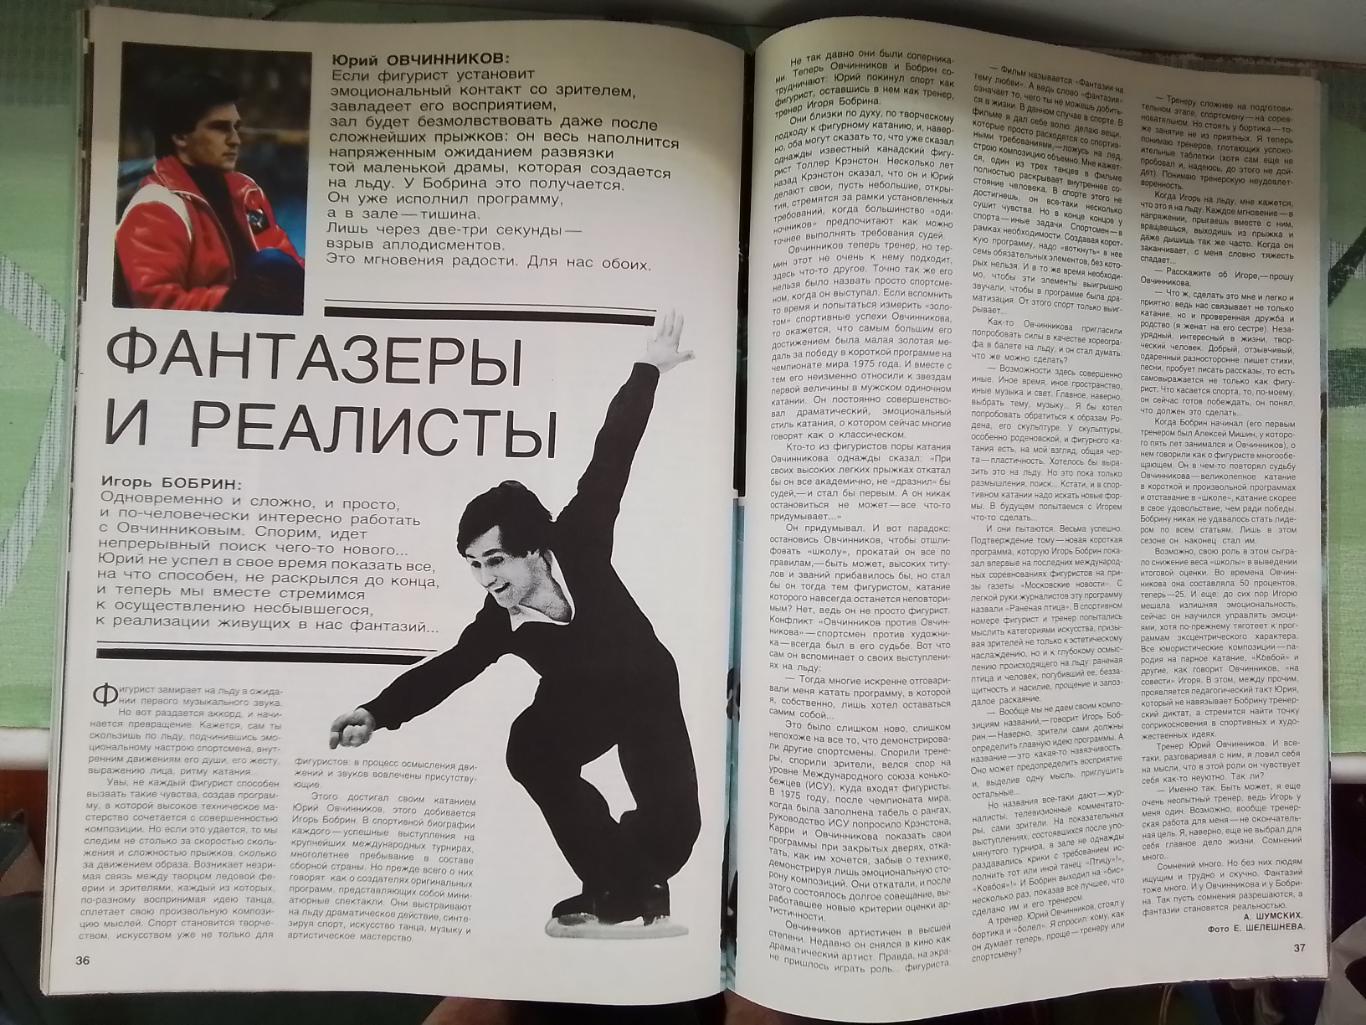 Журнал Спорт в СССР 1981 N 2 Превью футб сезона Приз Известий Игорь Бобрин 6